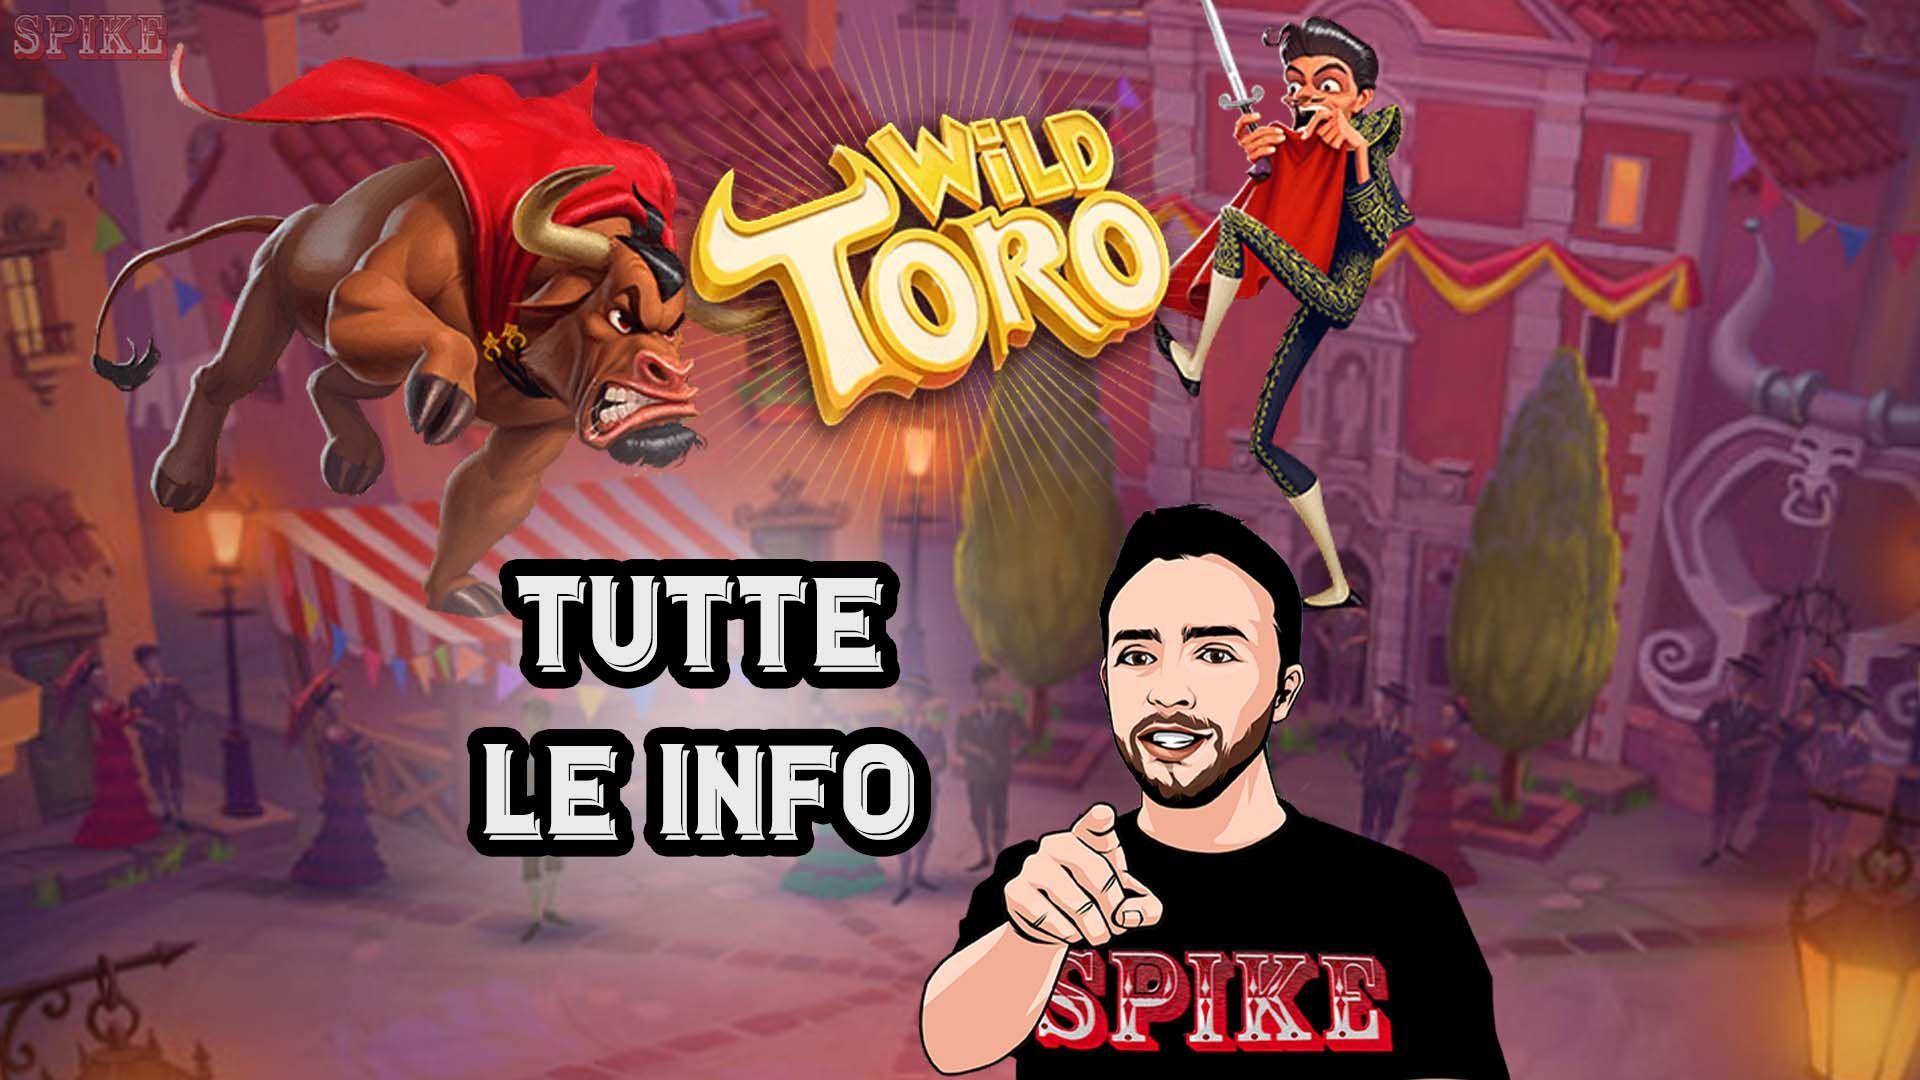 Online Gratis Wild Toro